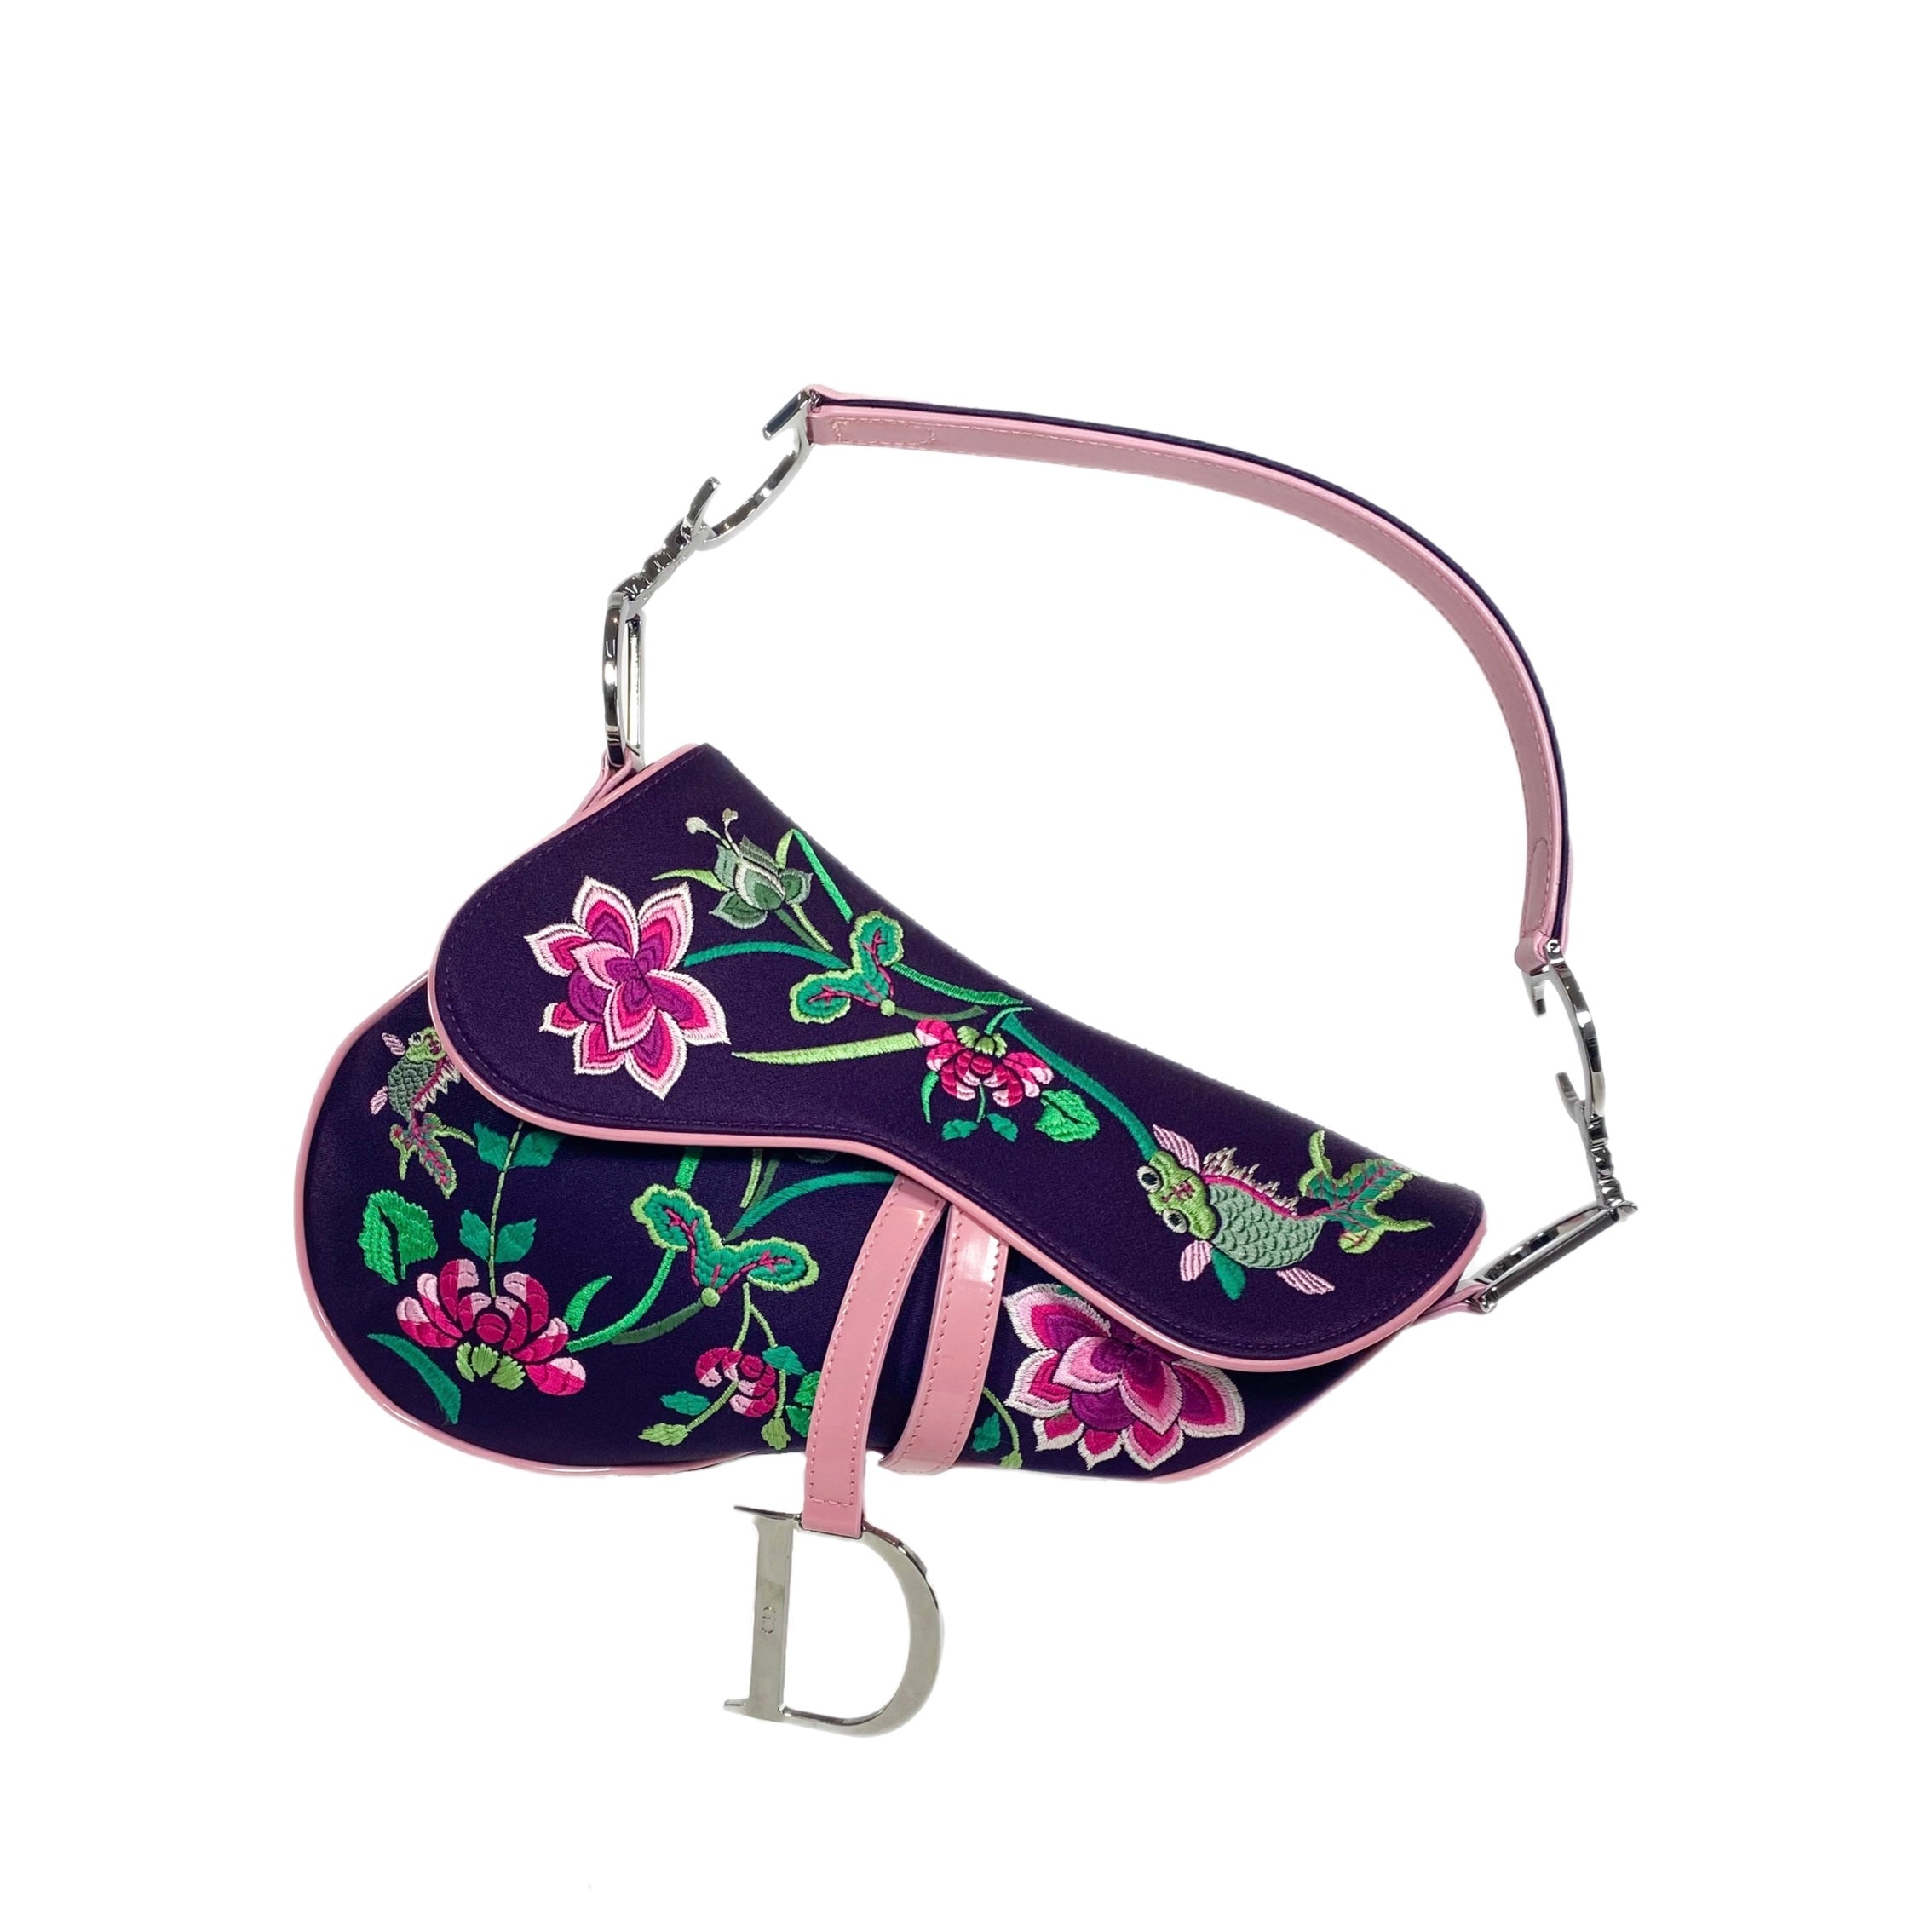 Christian Dior Monogram Floral Saddle Bag Pink